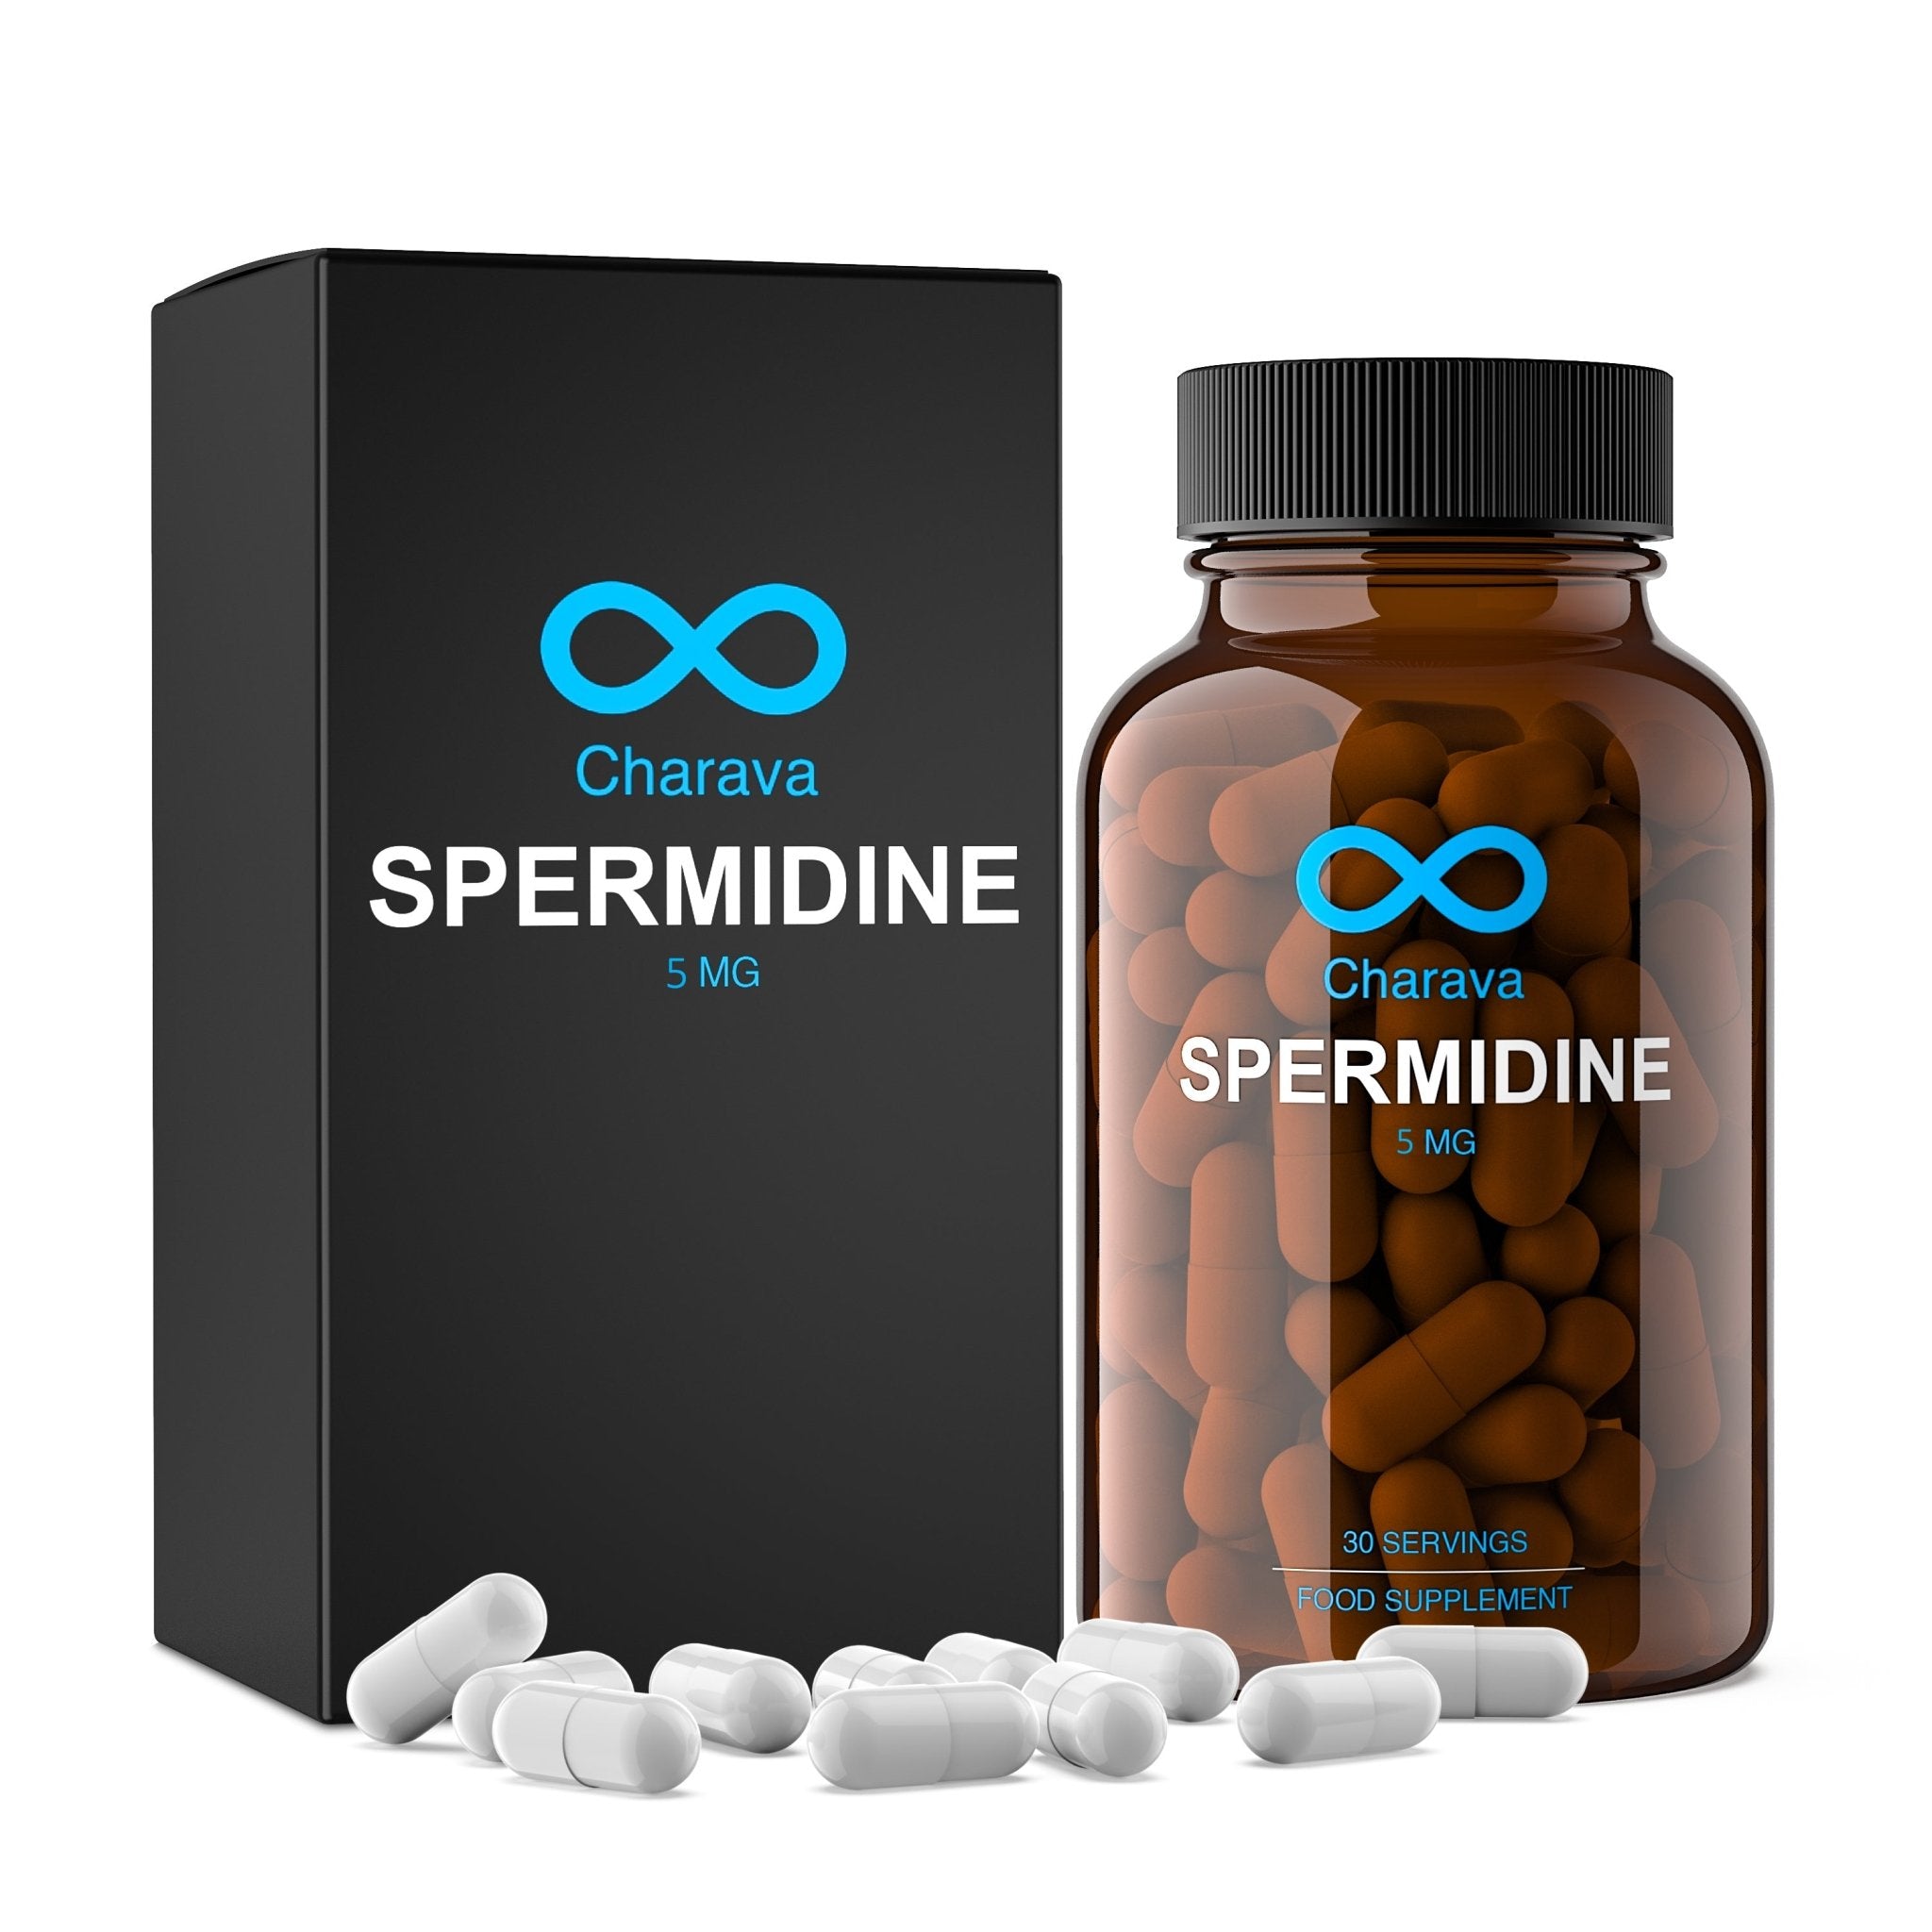 Charava Spermidine 5mg, Spermidine - 5mg